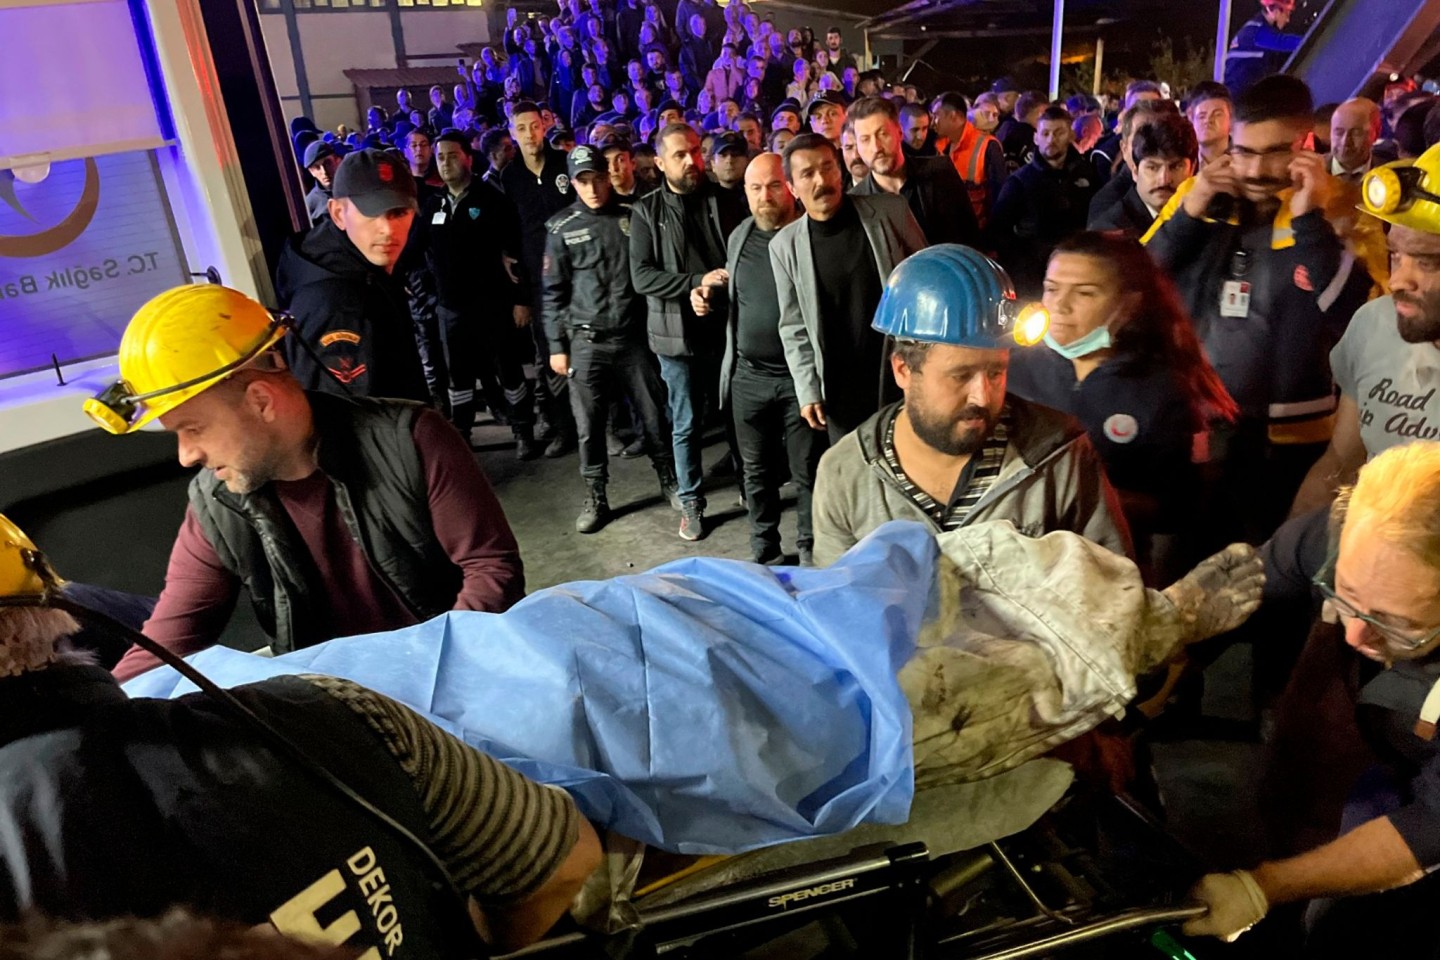 Bergleute bergen eine Leiche nach der Explosion in dem Bergwerk im türkischen Bartin.